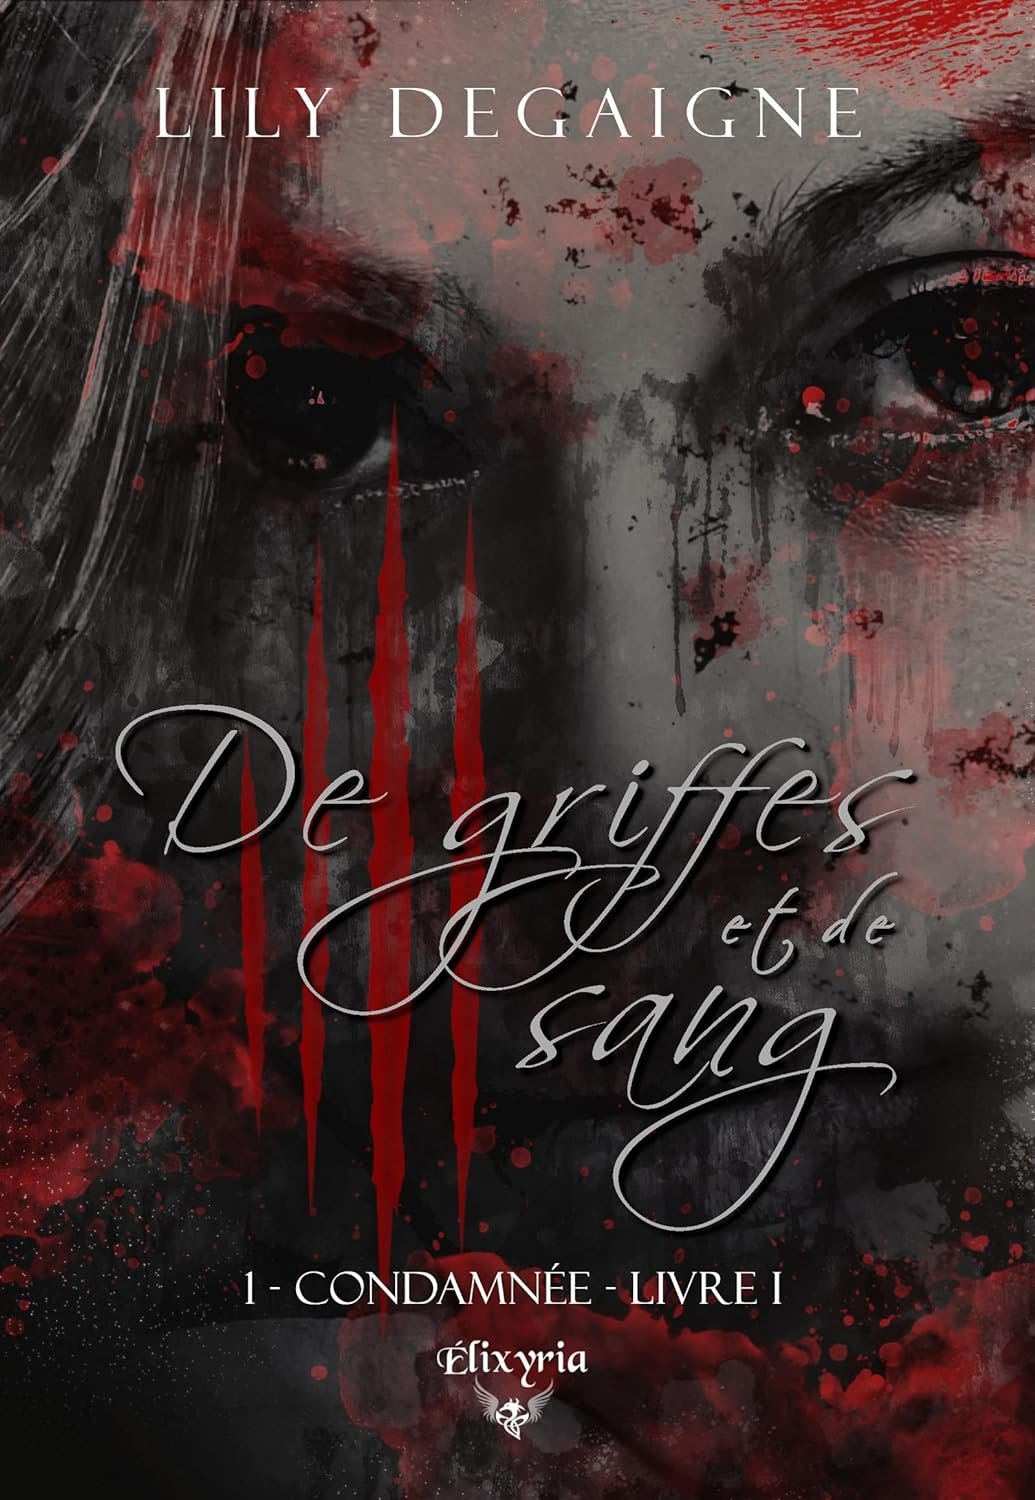 Lily Degaigne - De griffes et de sang, Tome 1 : Condamnée - Livre I